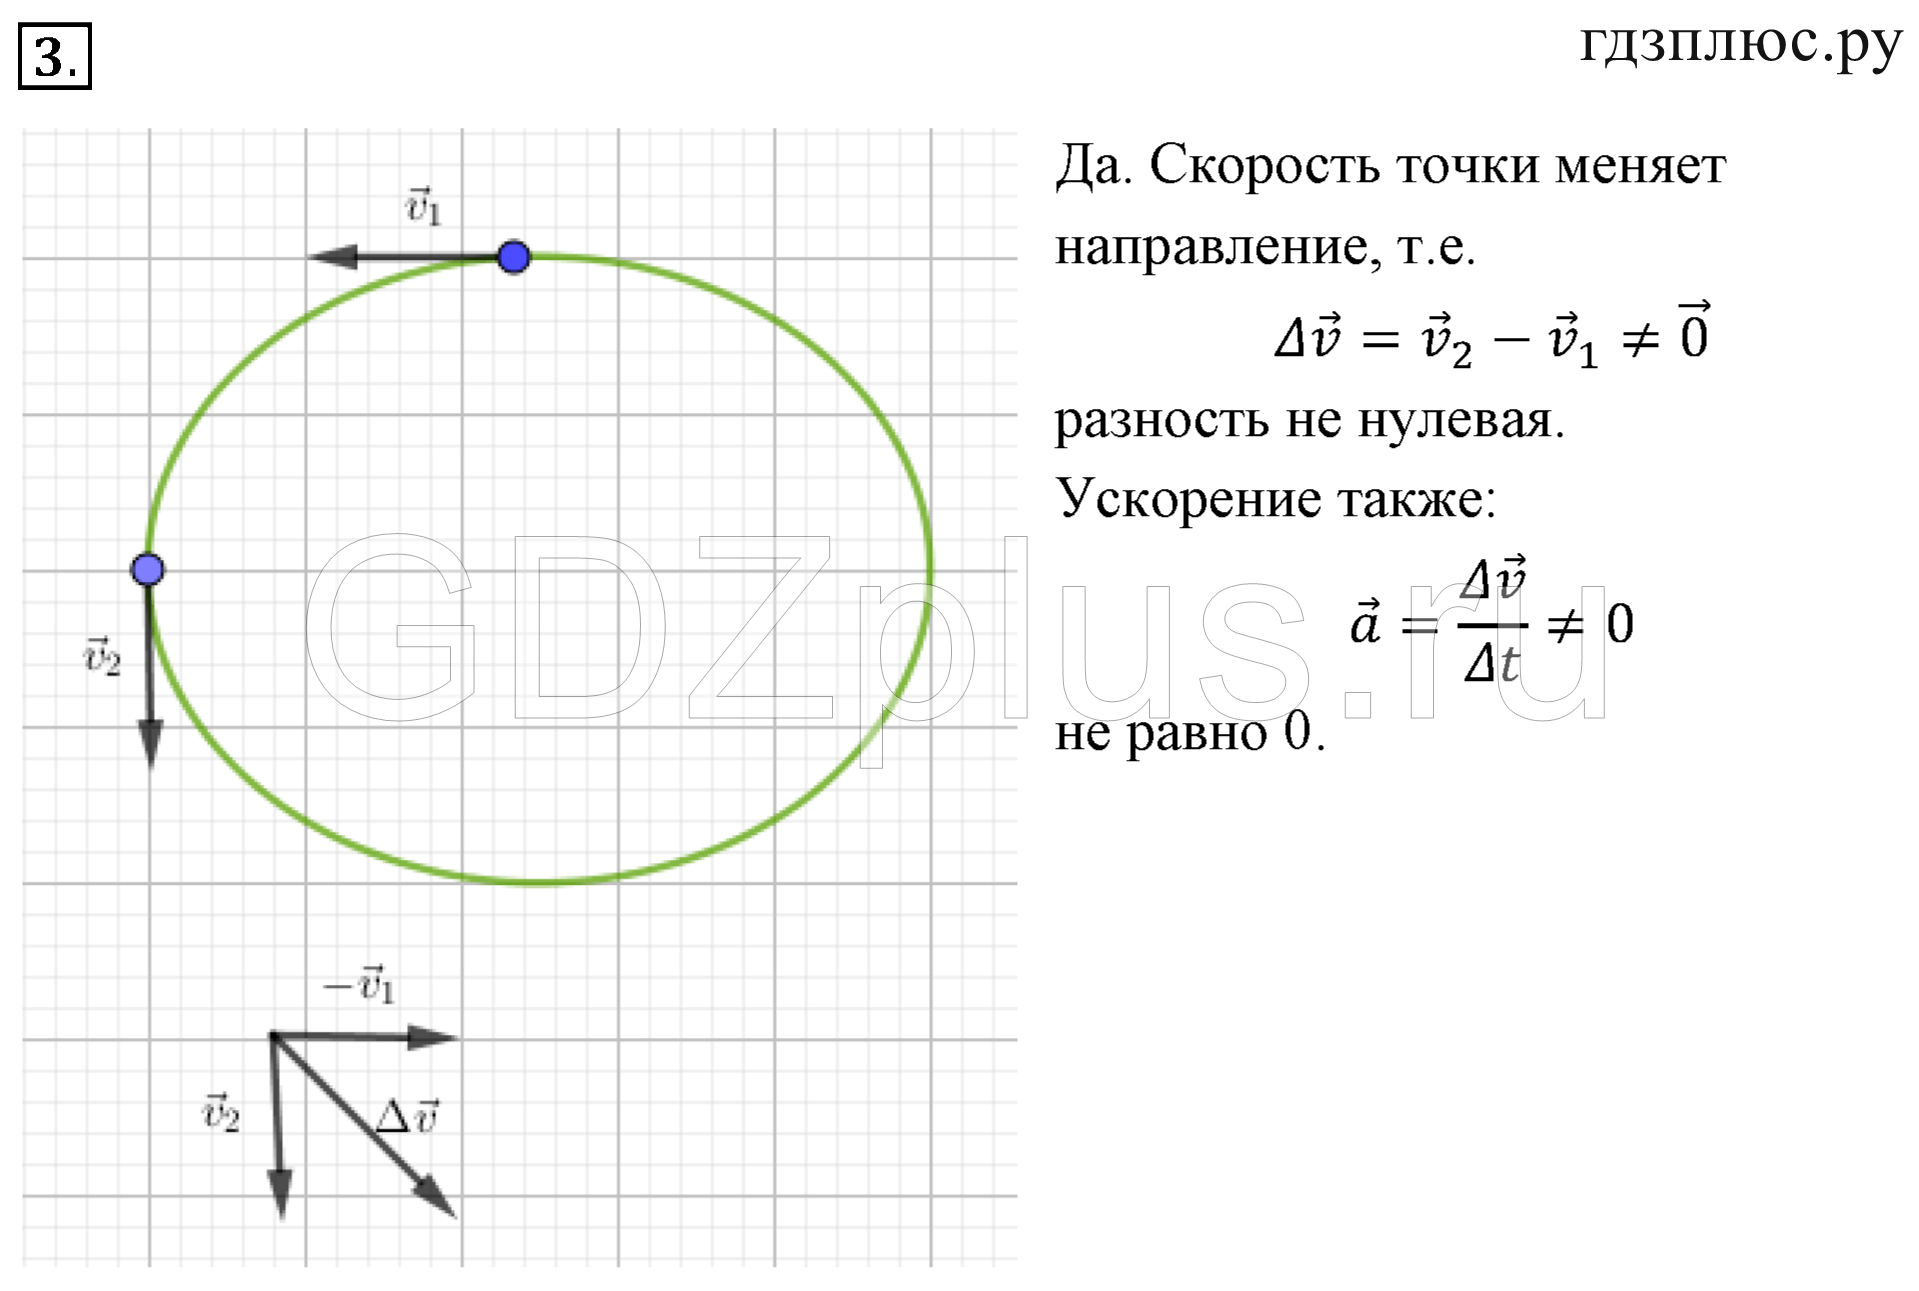 Нулевое ускорение. Уравнение окружности на плоскости. Геометрия 337. Касательная перпендикулярна радиусу проведенному в точку касания. Геометрическое место концов радиус-вектора.